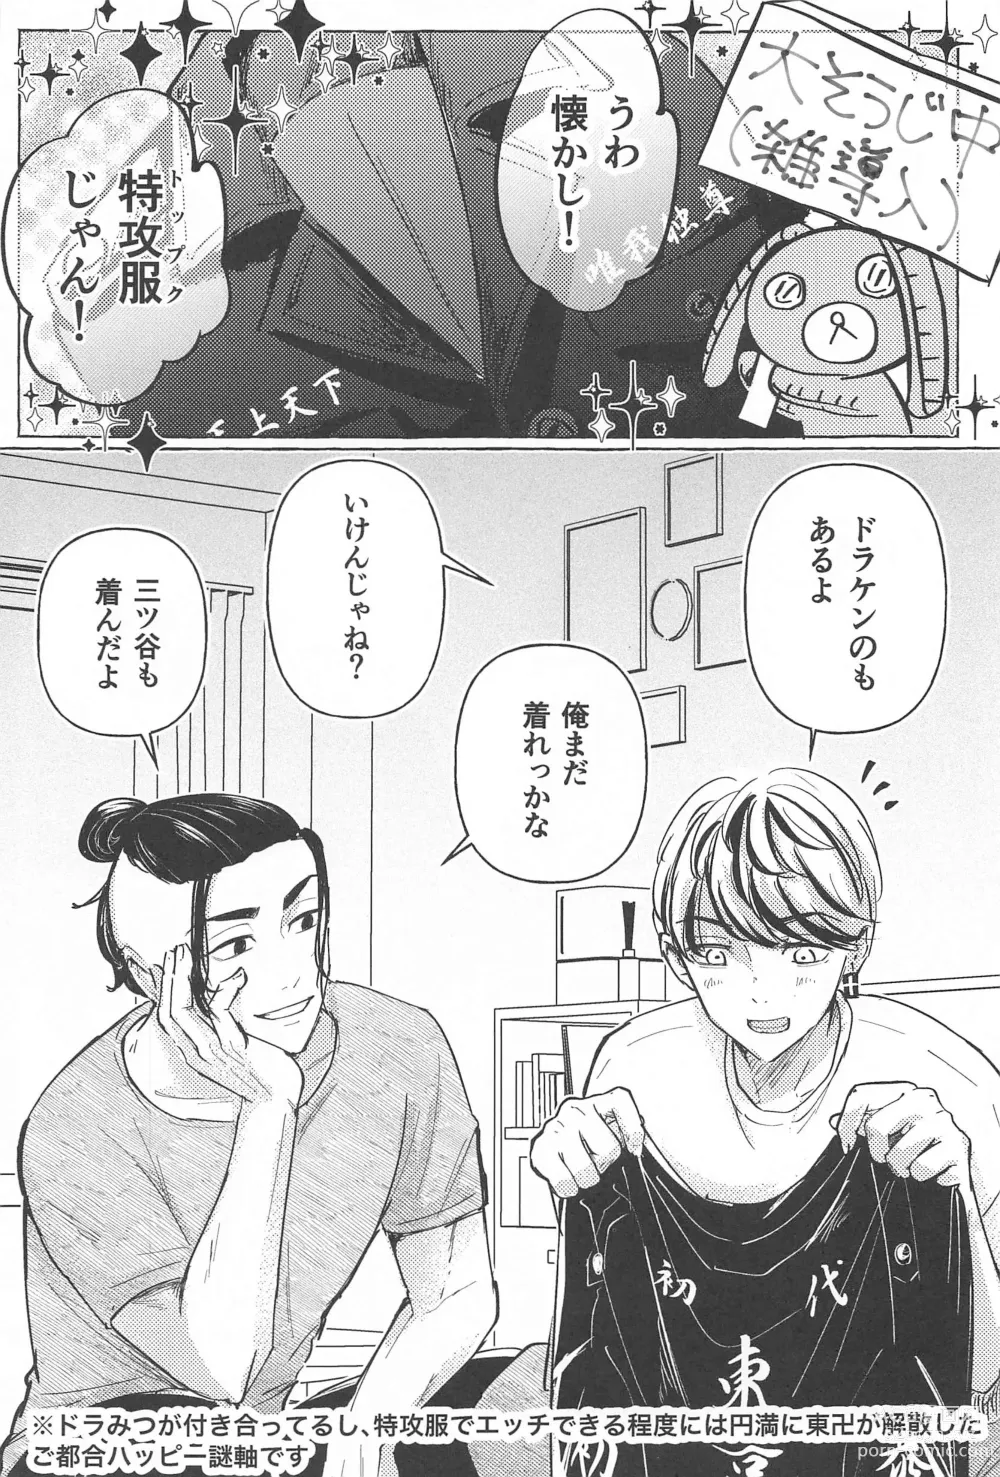 Page 2 of doujinshi 27-sai no Tokkoufuku